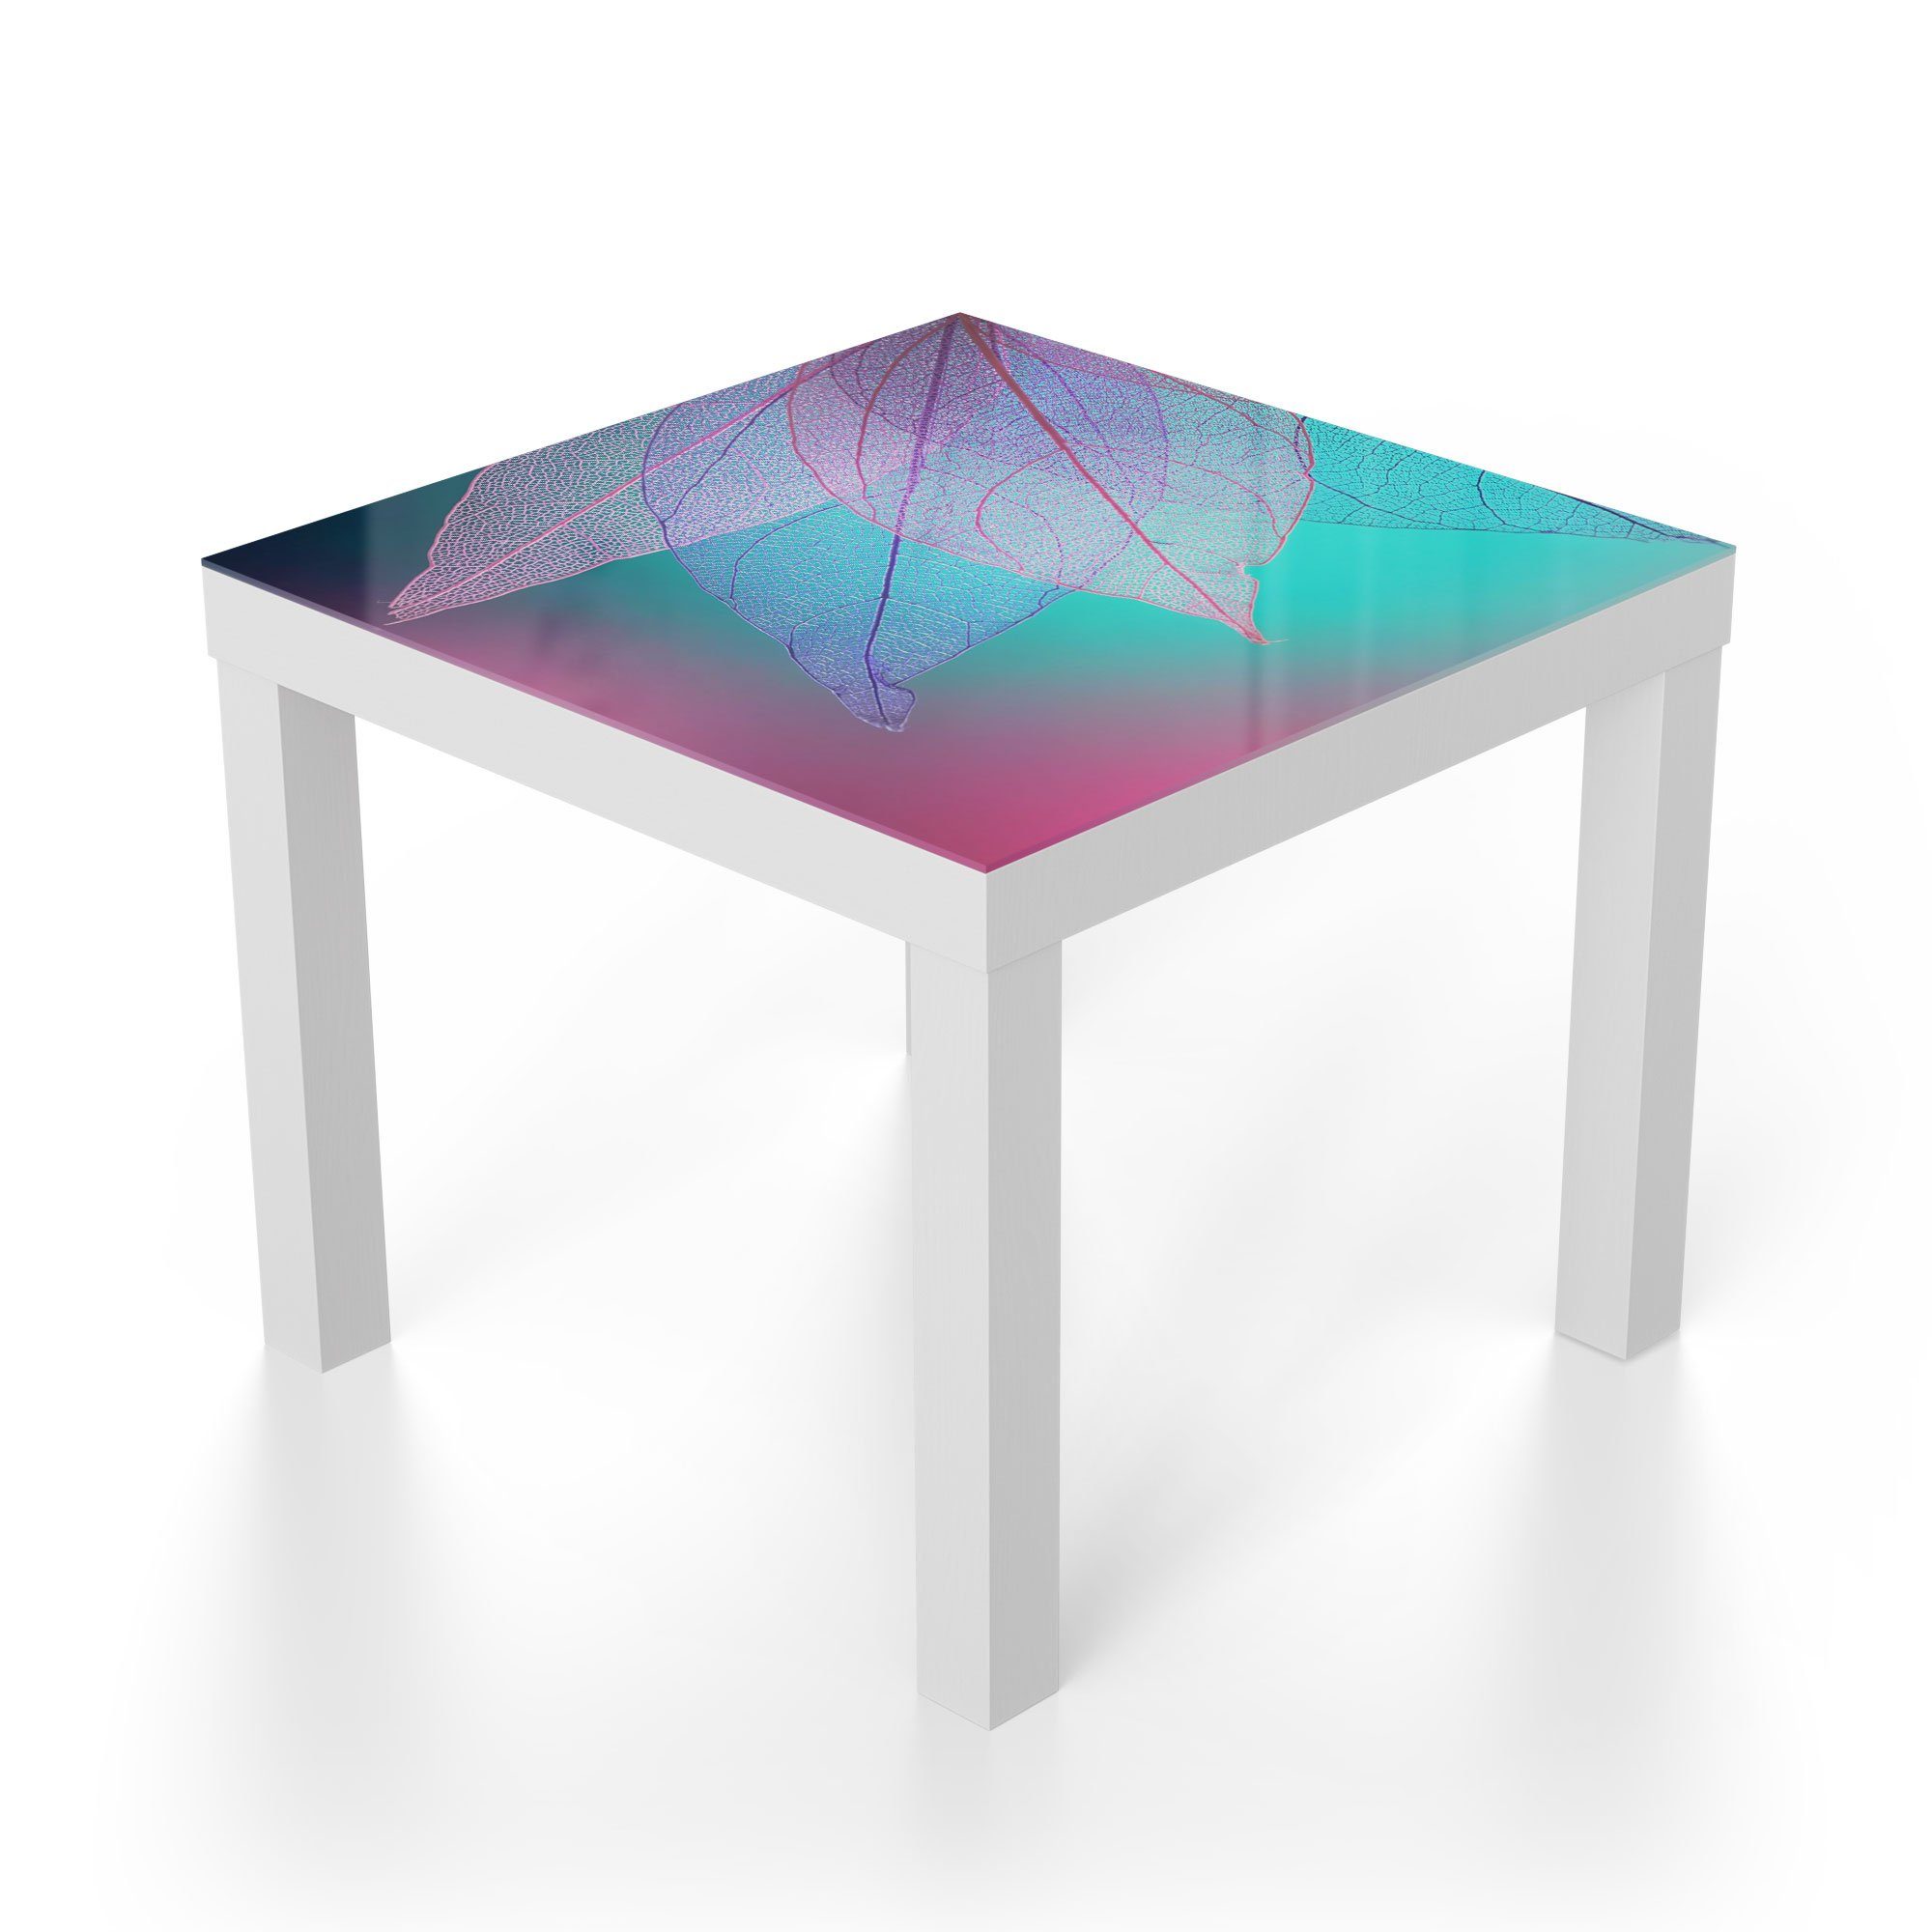 Blattfächer', Glastisch Beistelltisch 'Transparenter modern DEQORI Glas Couchtisch Weiß